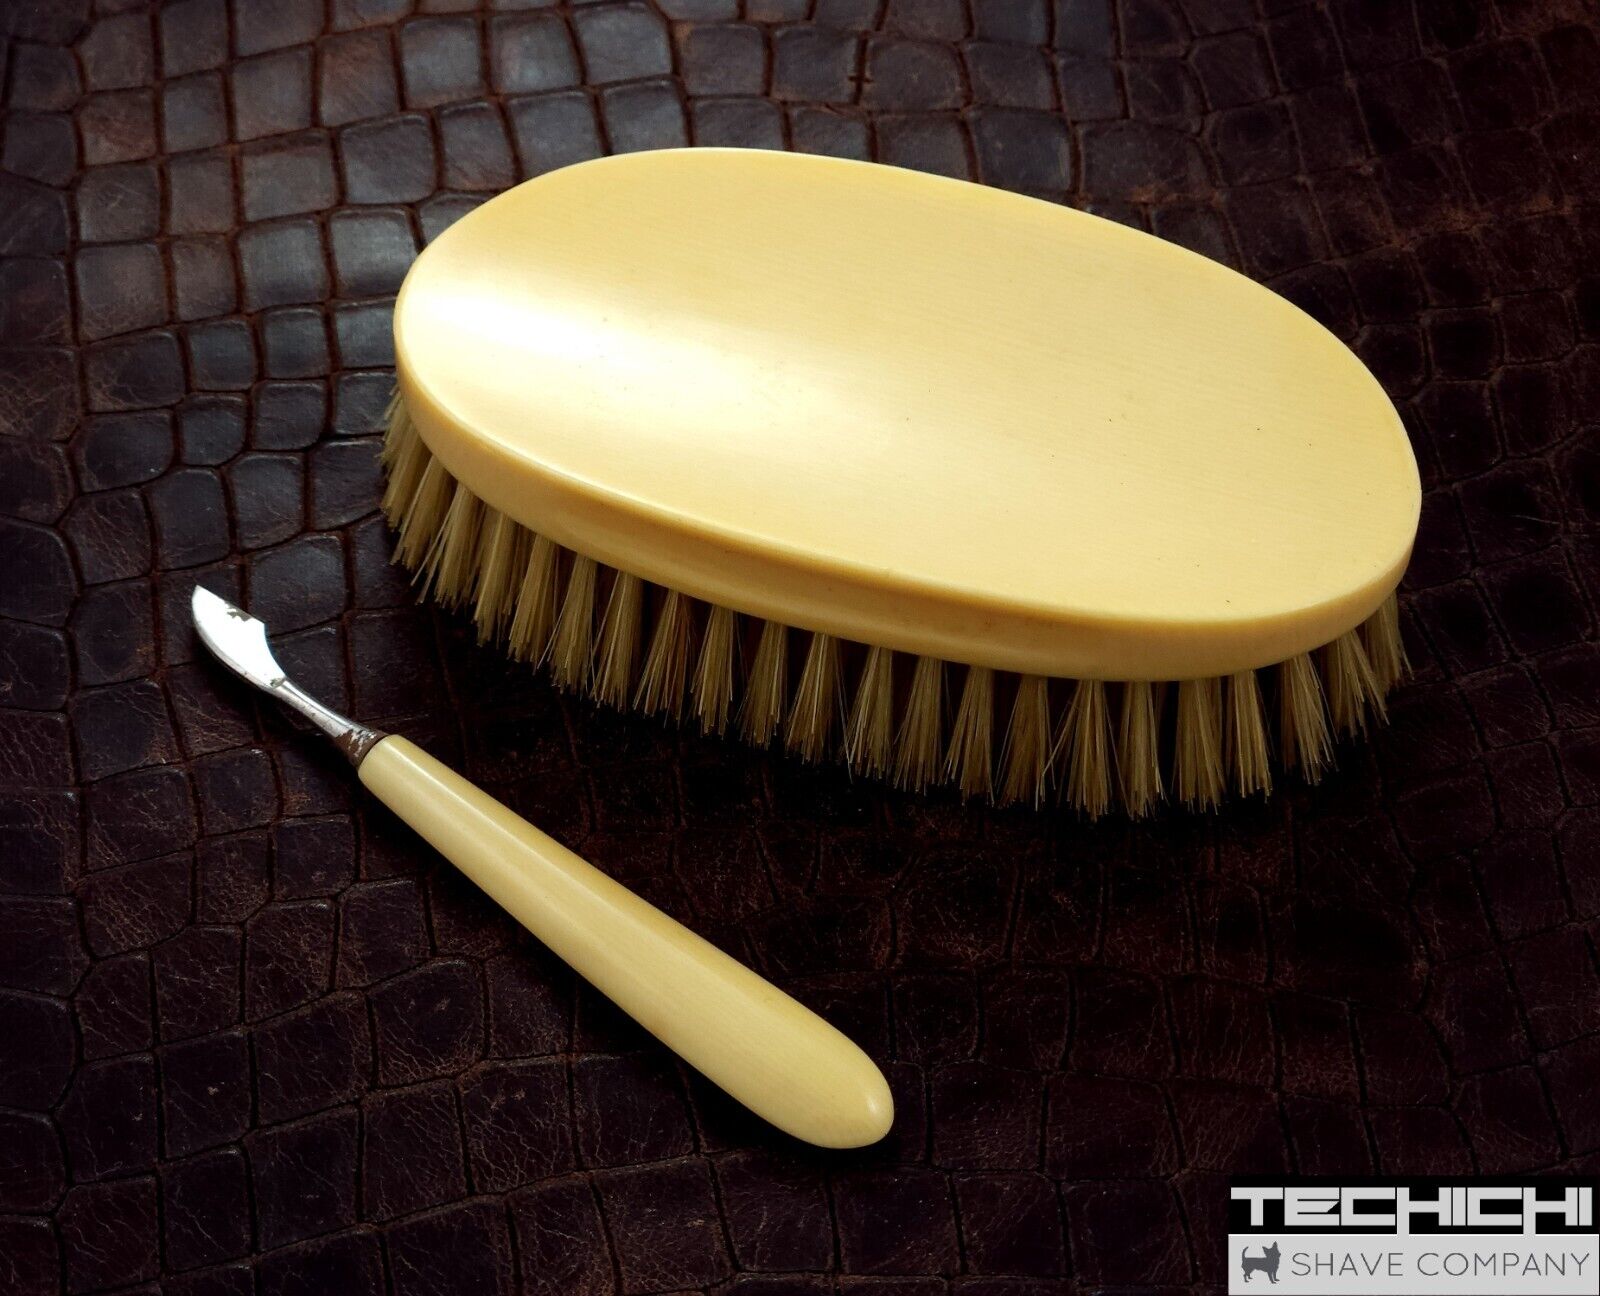 Vintage Hair Brush and Nail Cuticle Tool